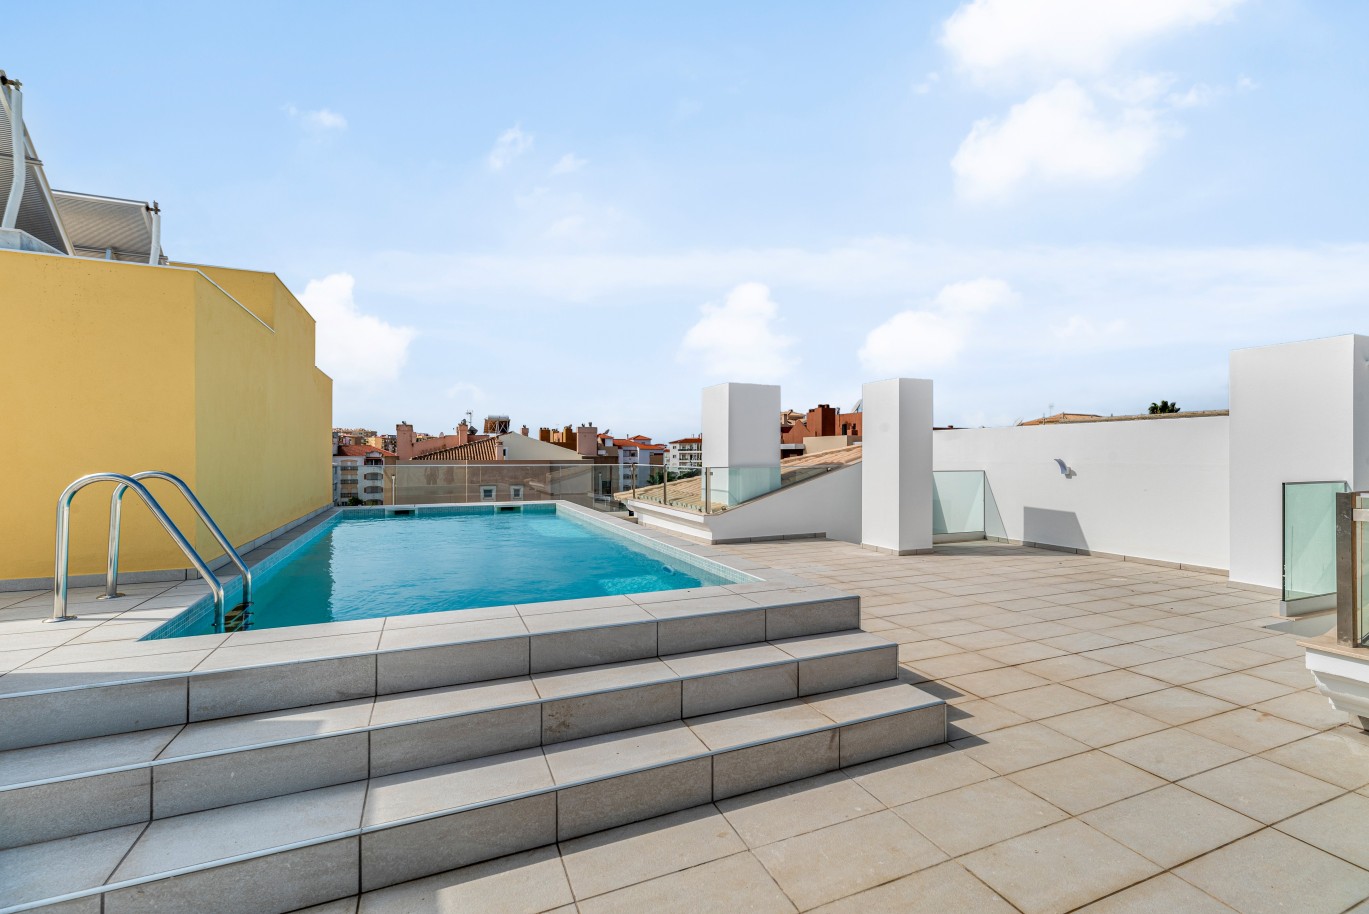 Apartamento, com terraço, para venda, em Lagos, Algarve_237986